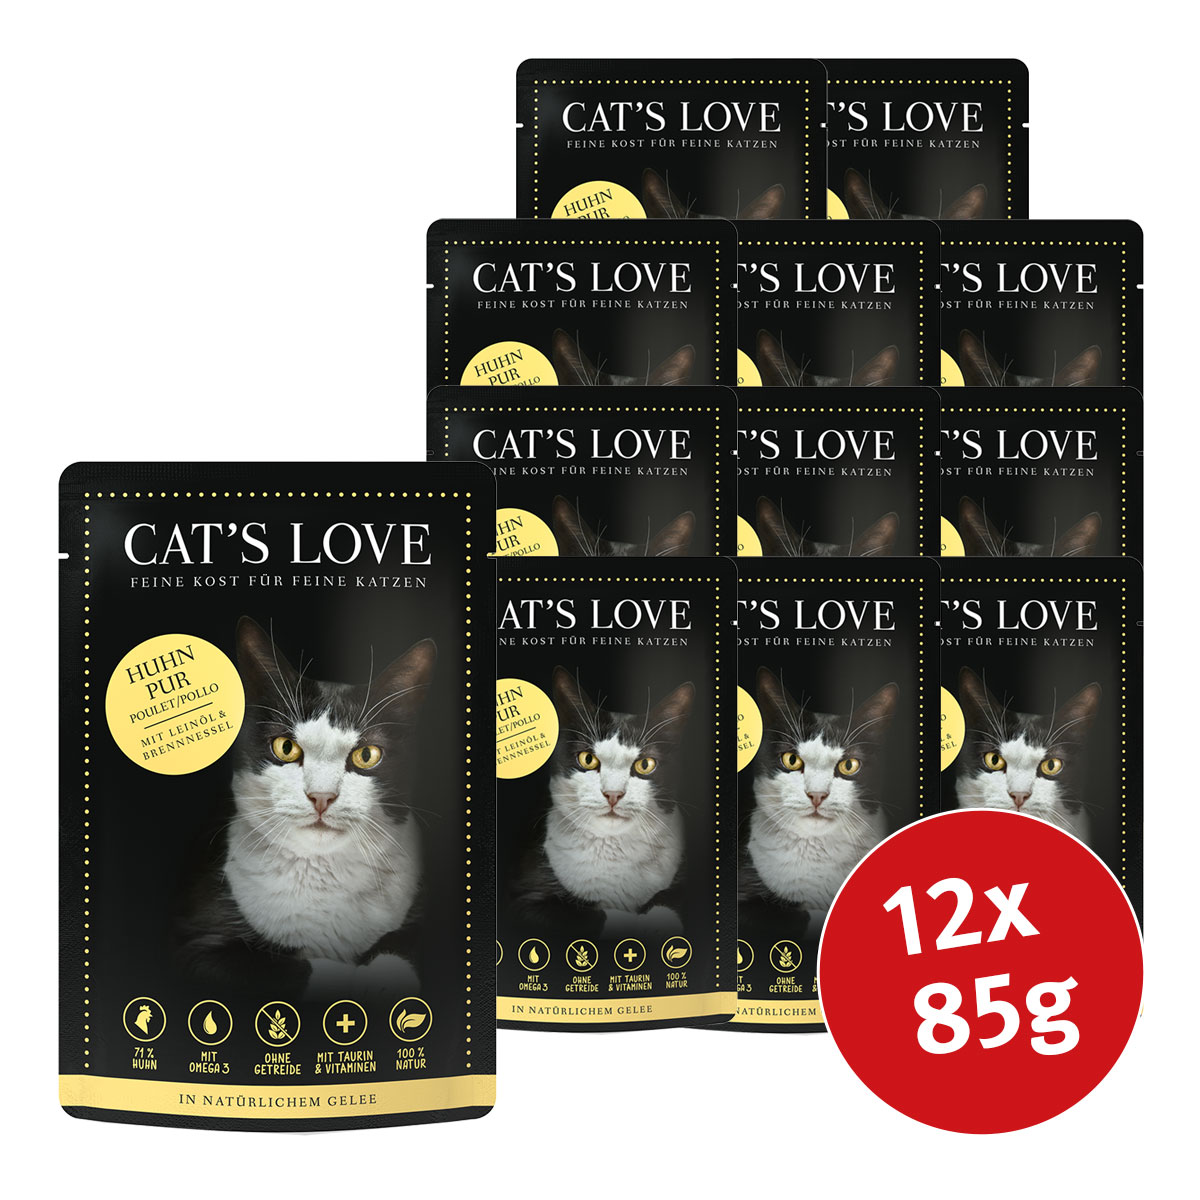 Cat's Love s čistým kuřecím masem, lněným olejem a kopřivami